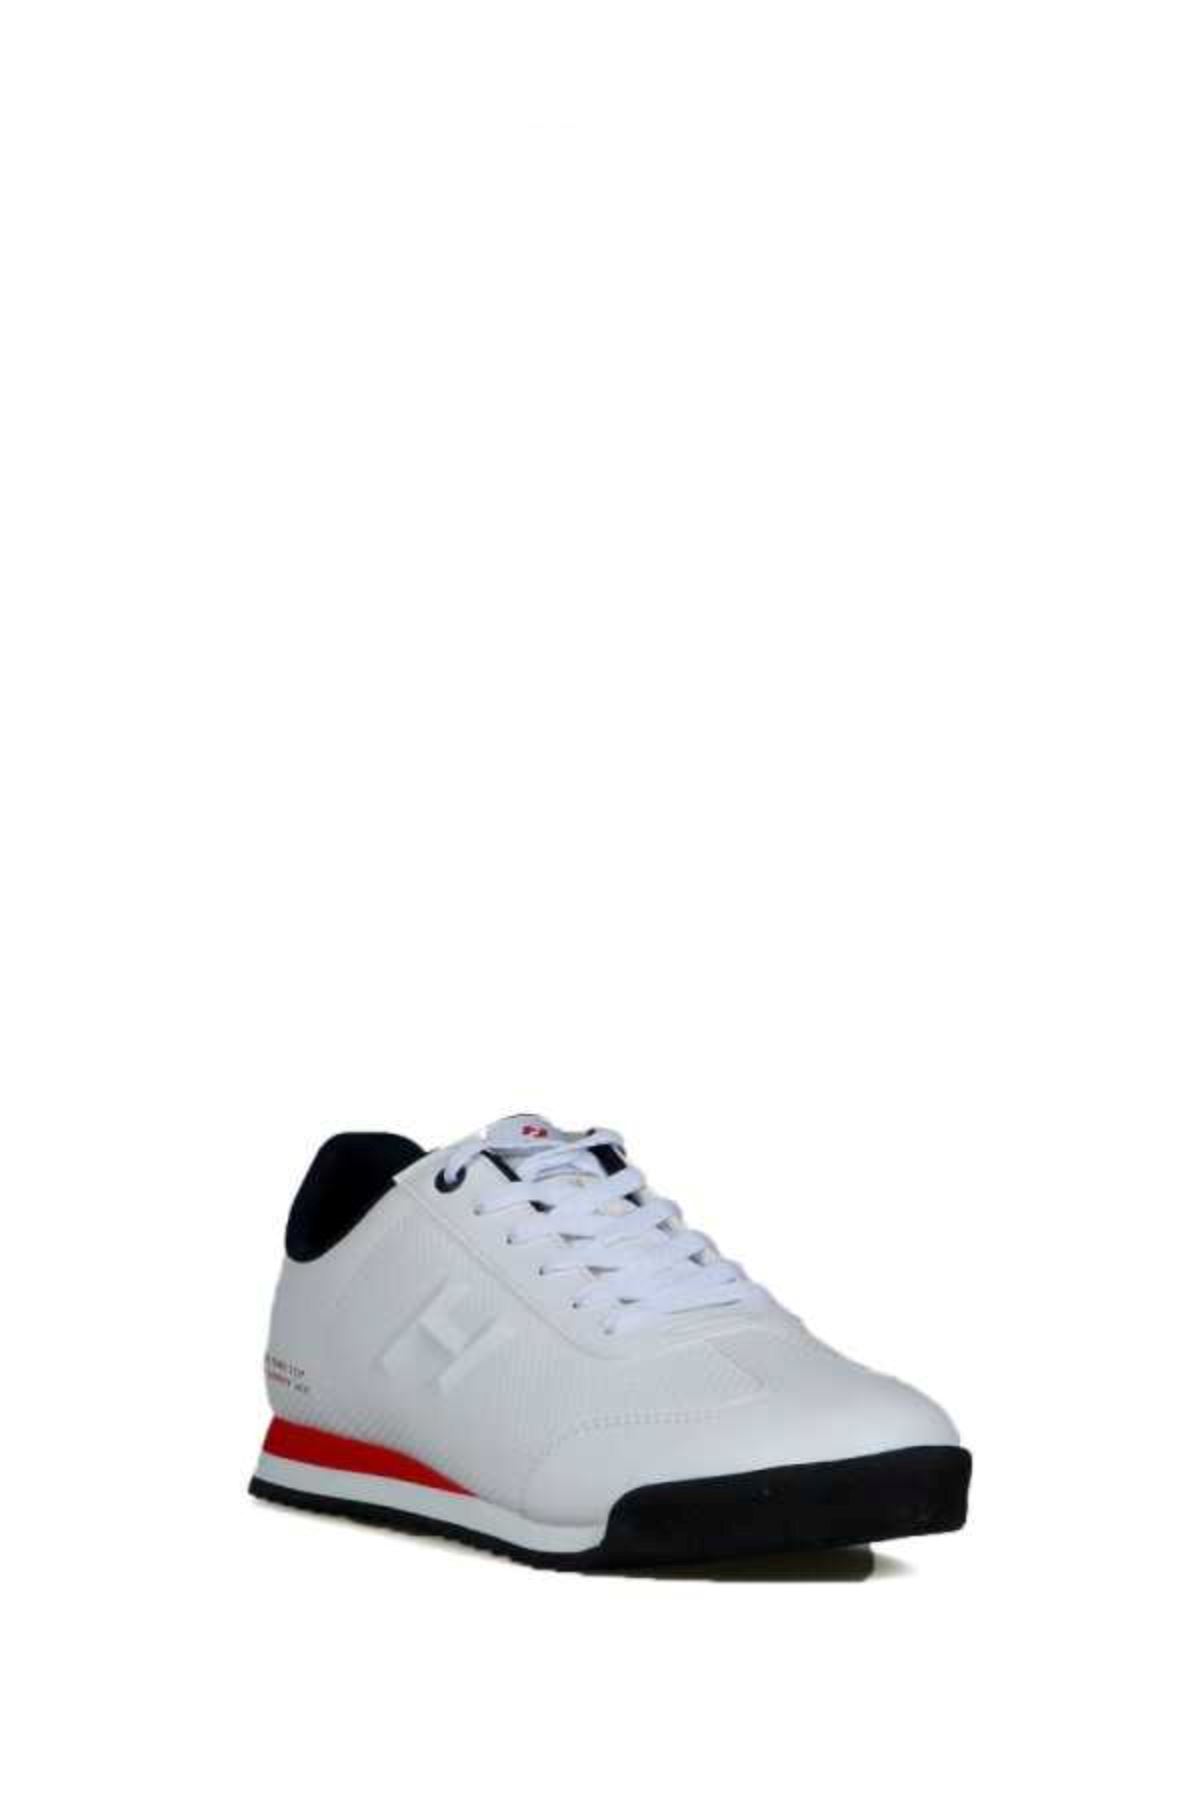 PİCO NEW Erkek Beyaz Spor Ayakkabı - 21540-M